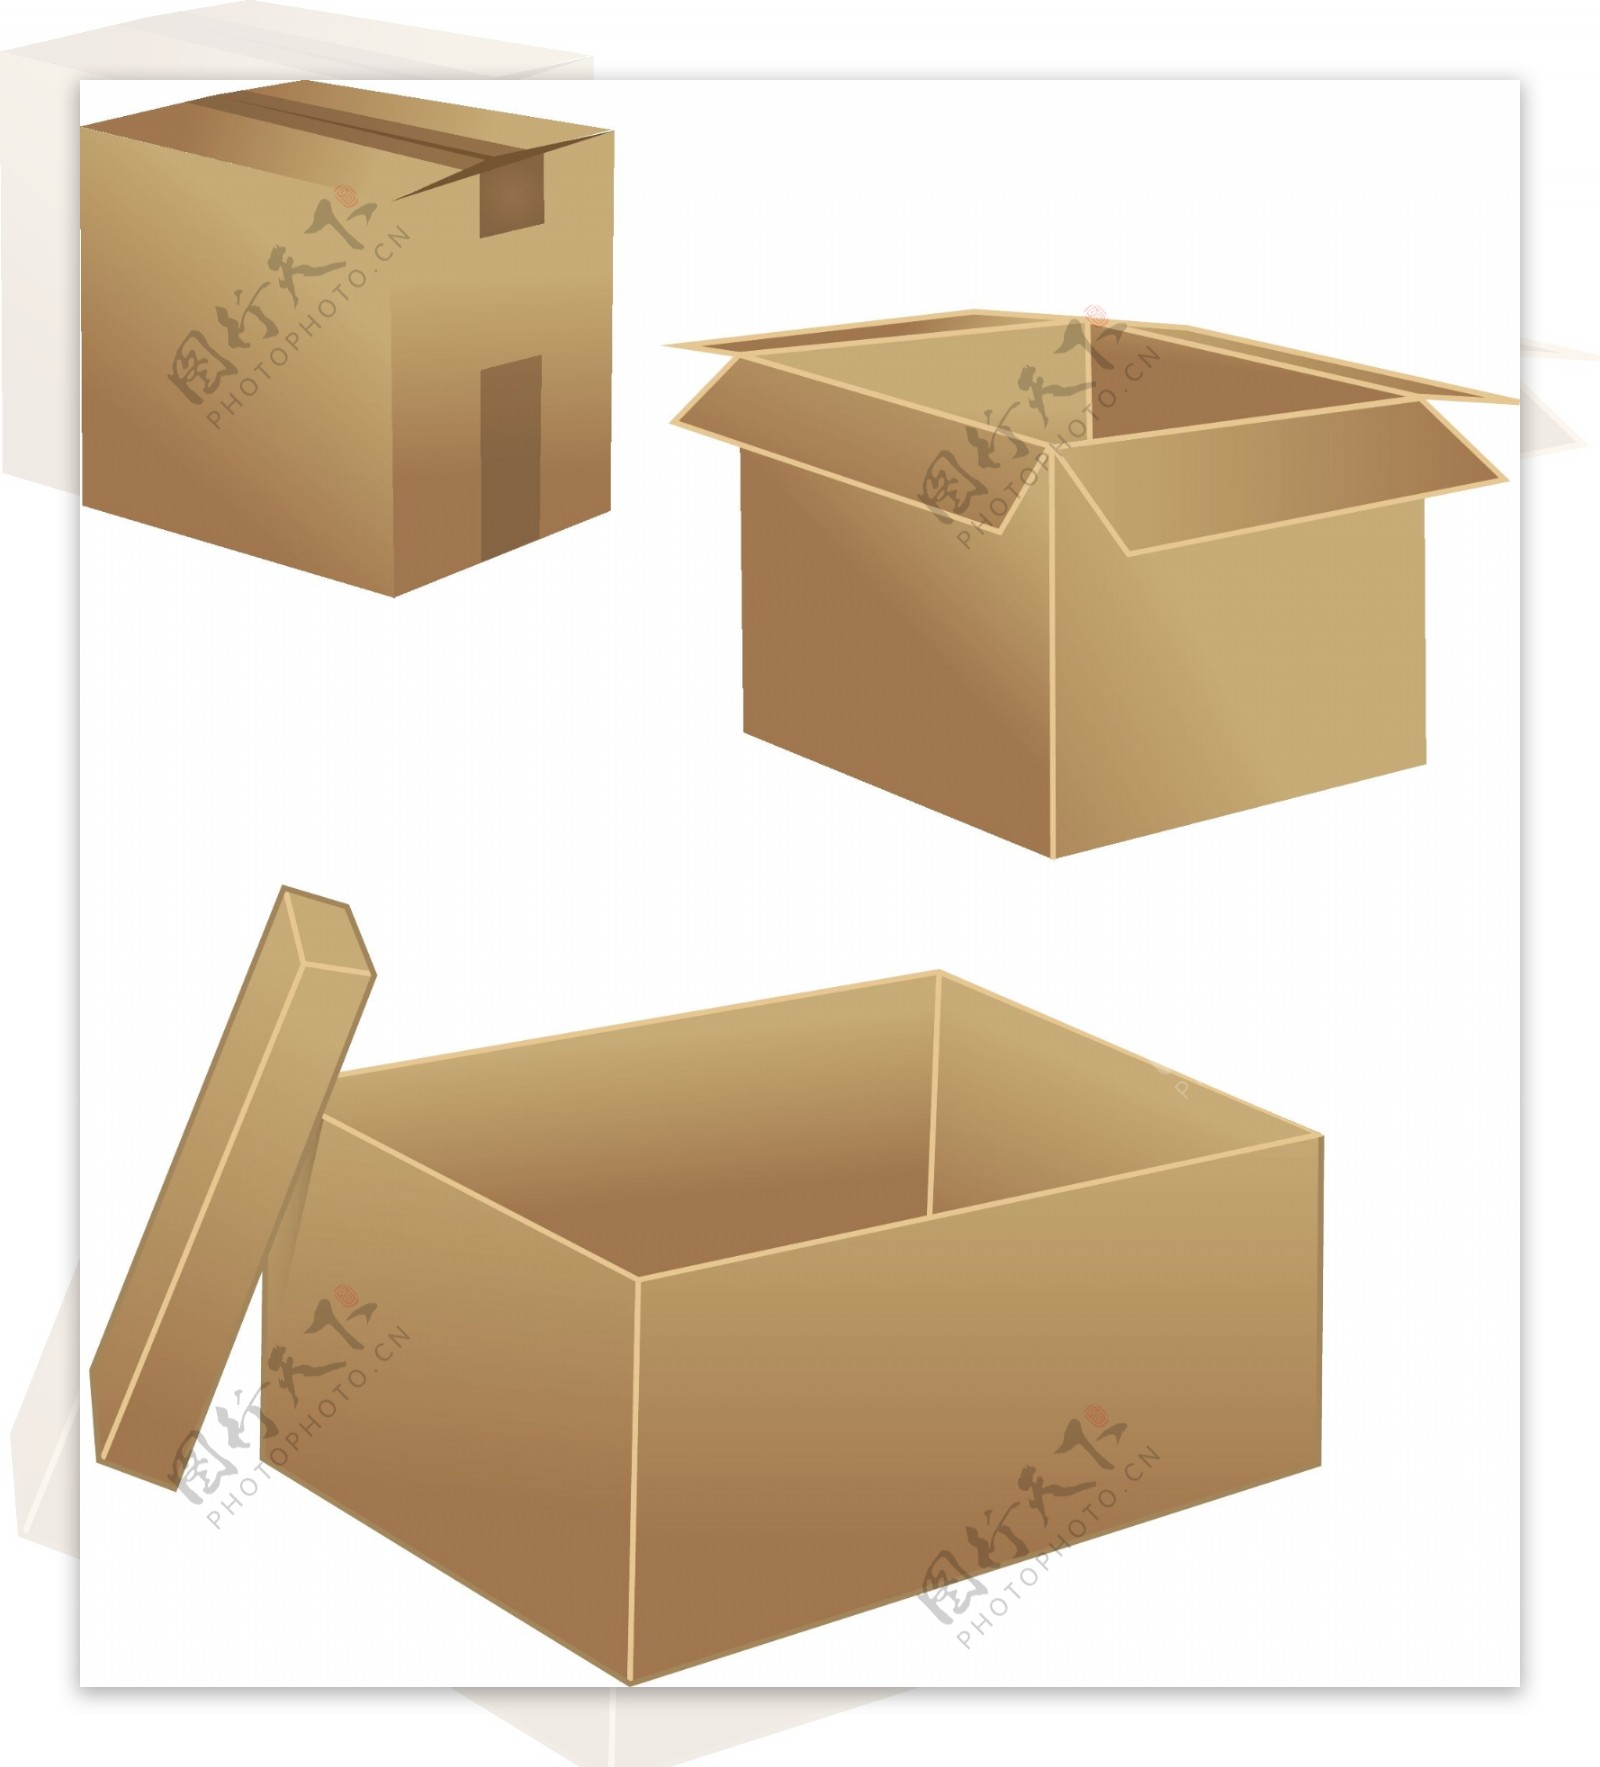 纸盒包装设计